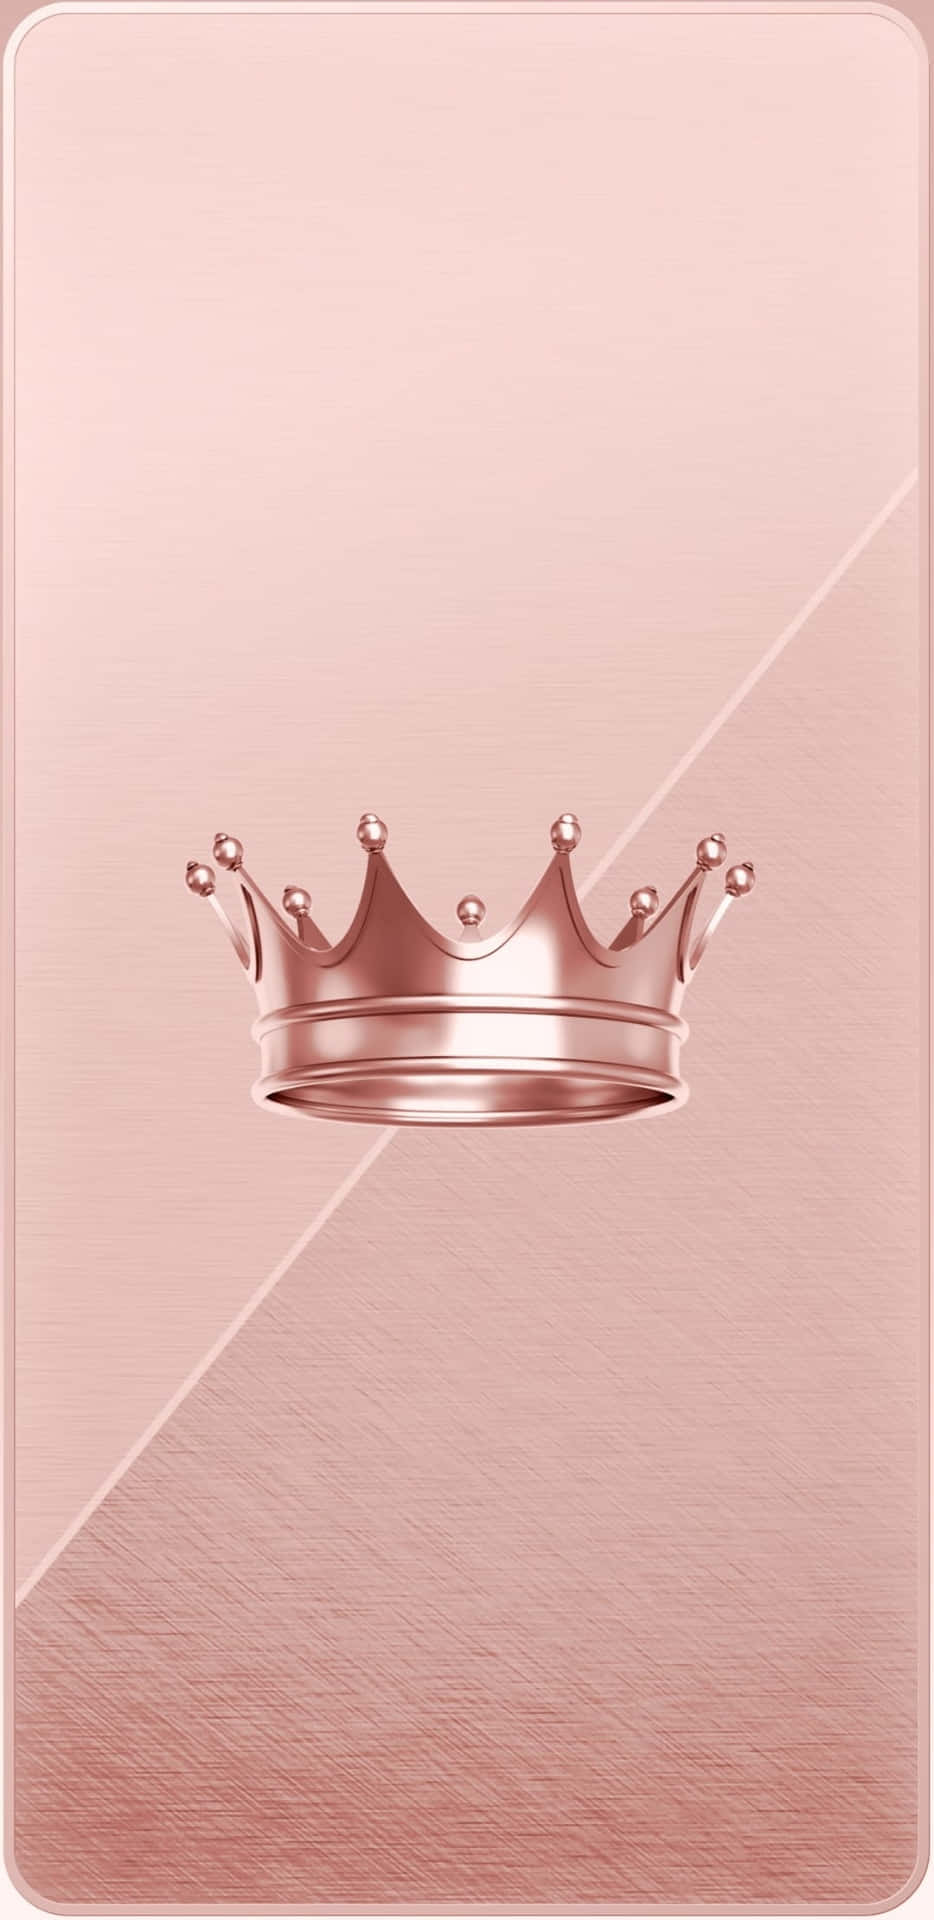 Geschmücktmit Einer Majestätischen Krone Strahlt Die Prinzessin Wahre Schönheit Aus. Wallpaper